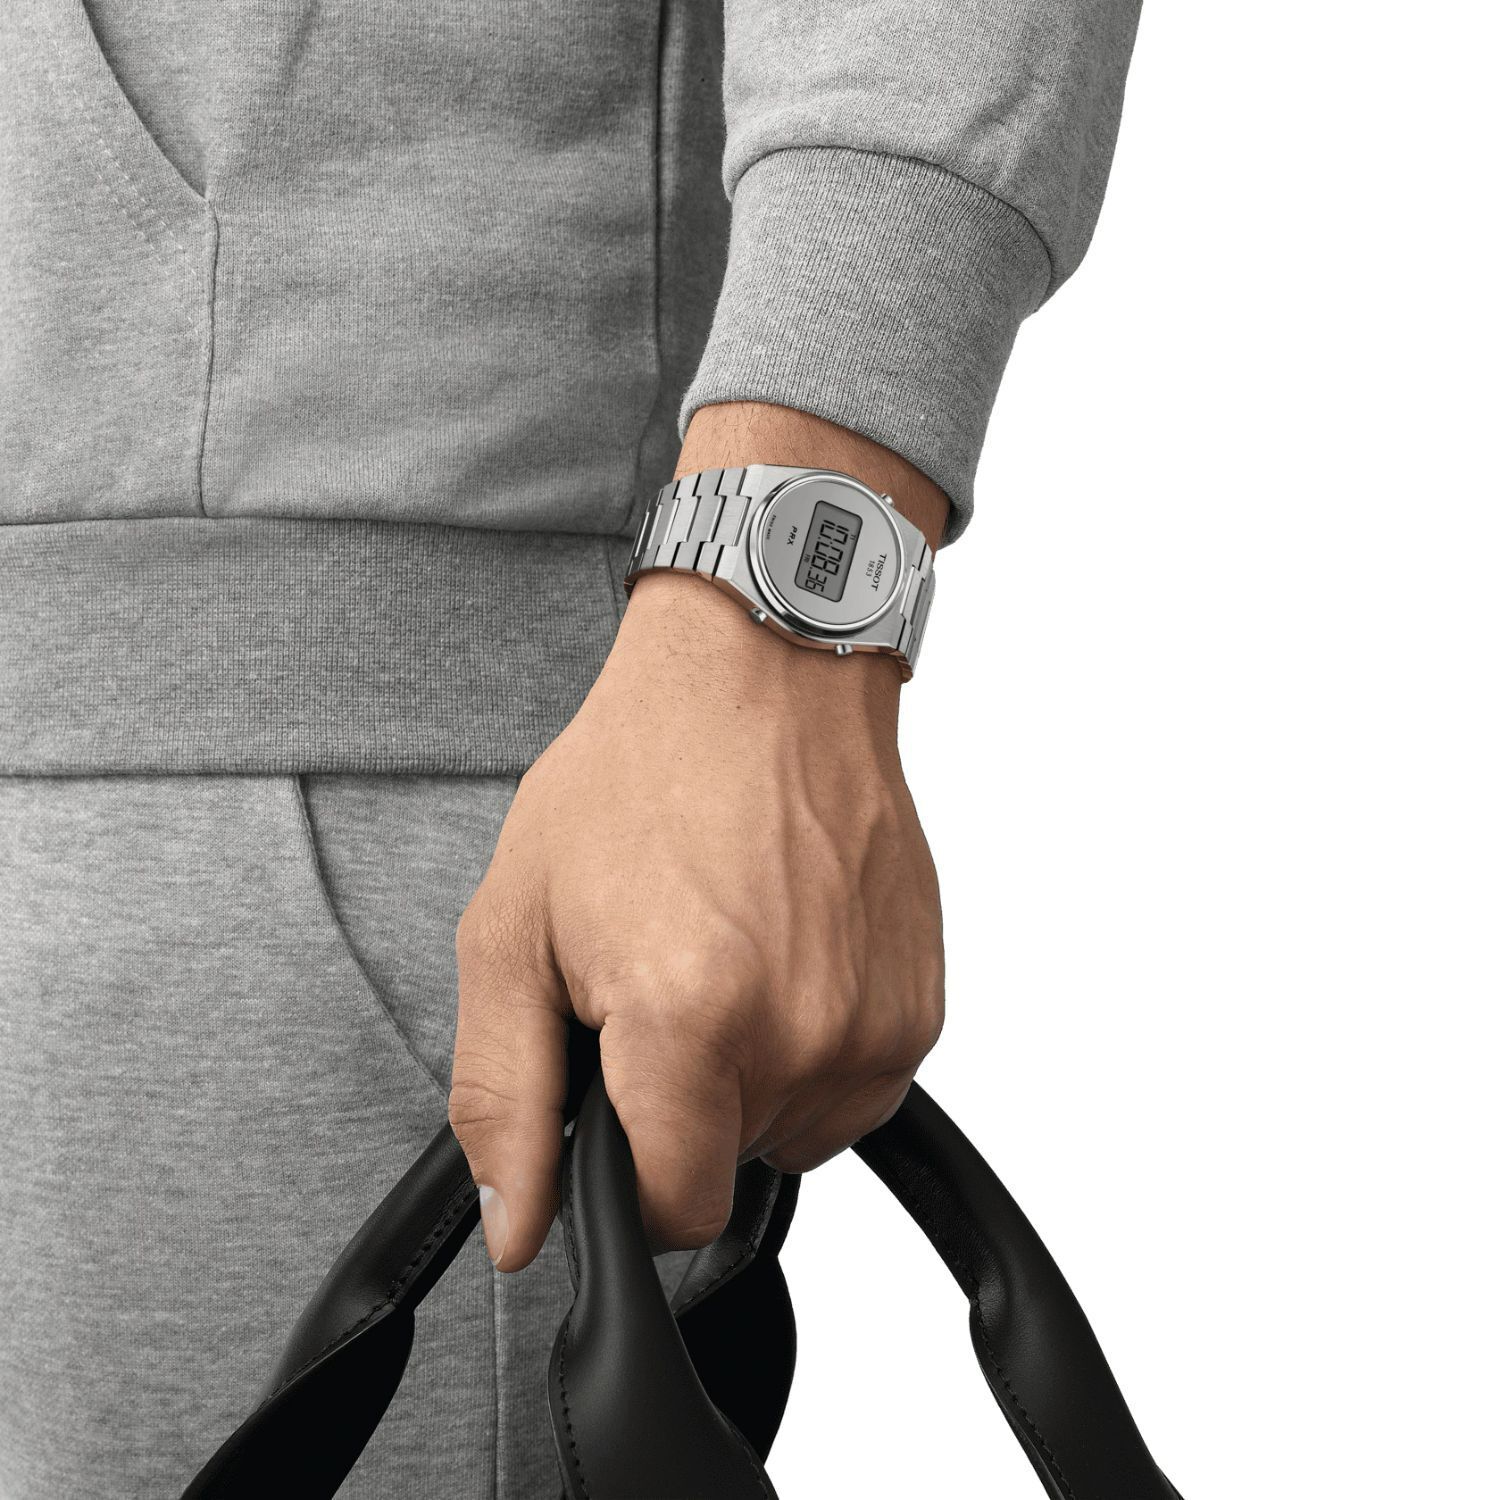 Tissot PRX Digital 40mm Silver Dial Steel Case Bracelet Watch